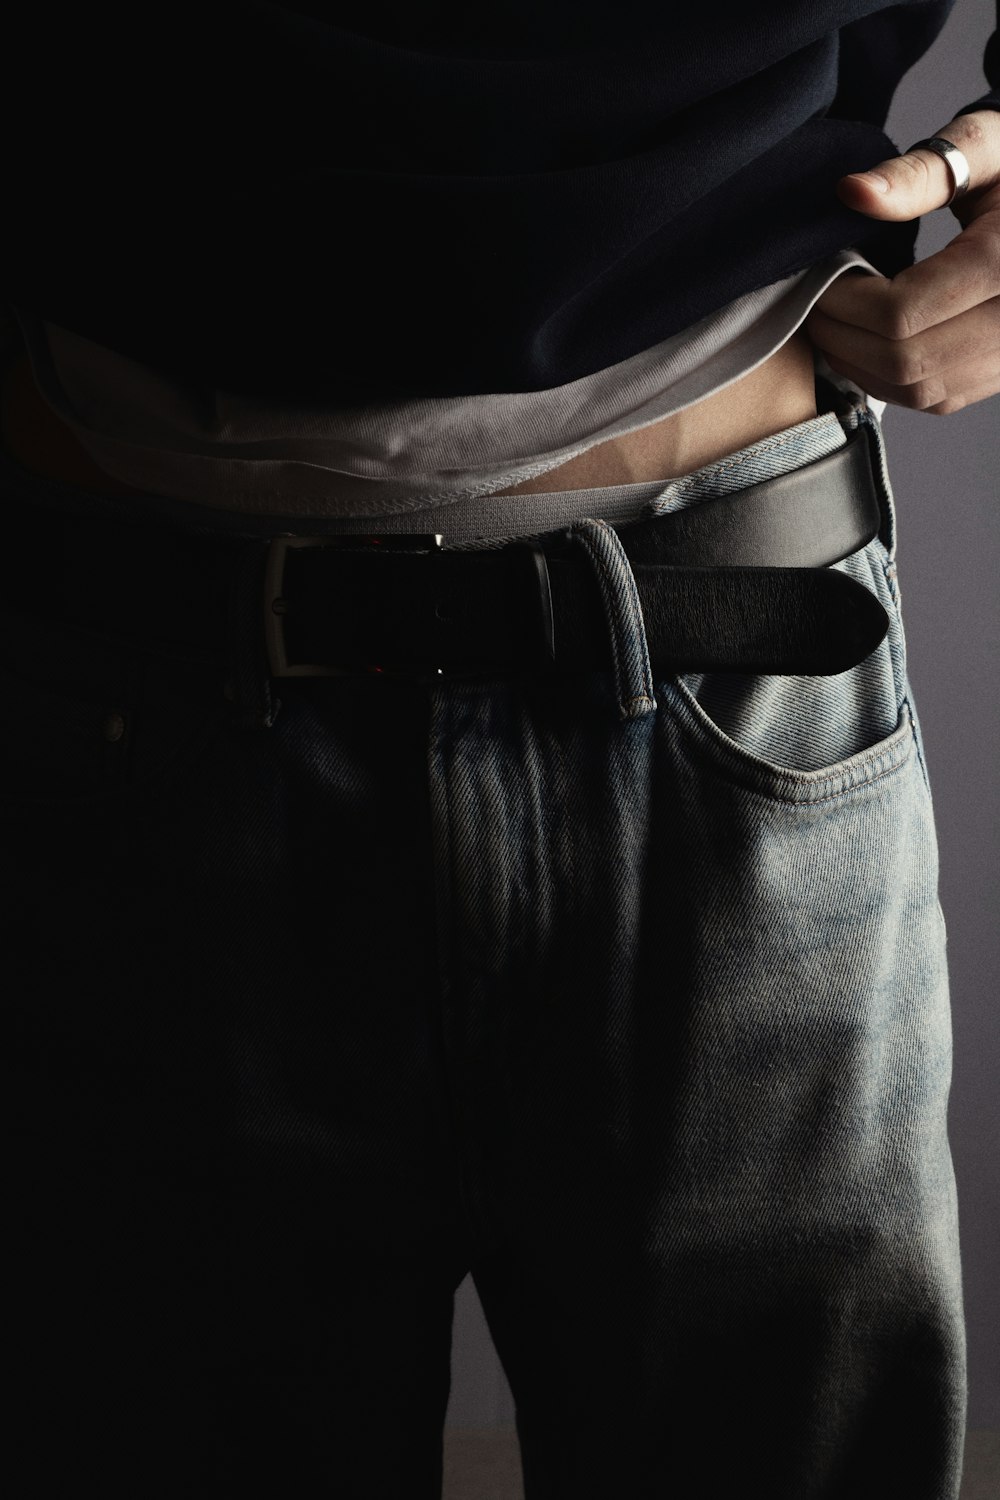 Un hombre lleva un cinturón y jeans